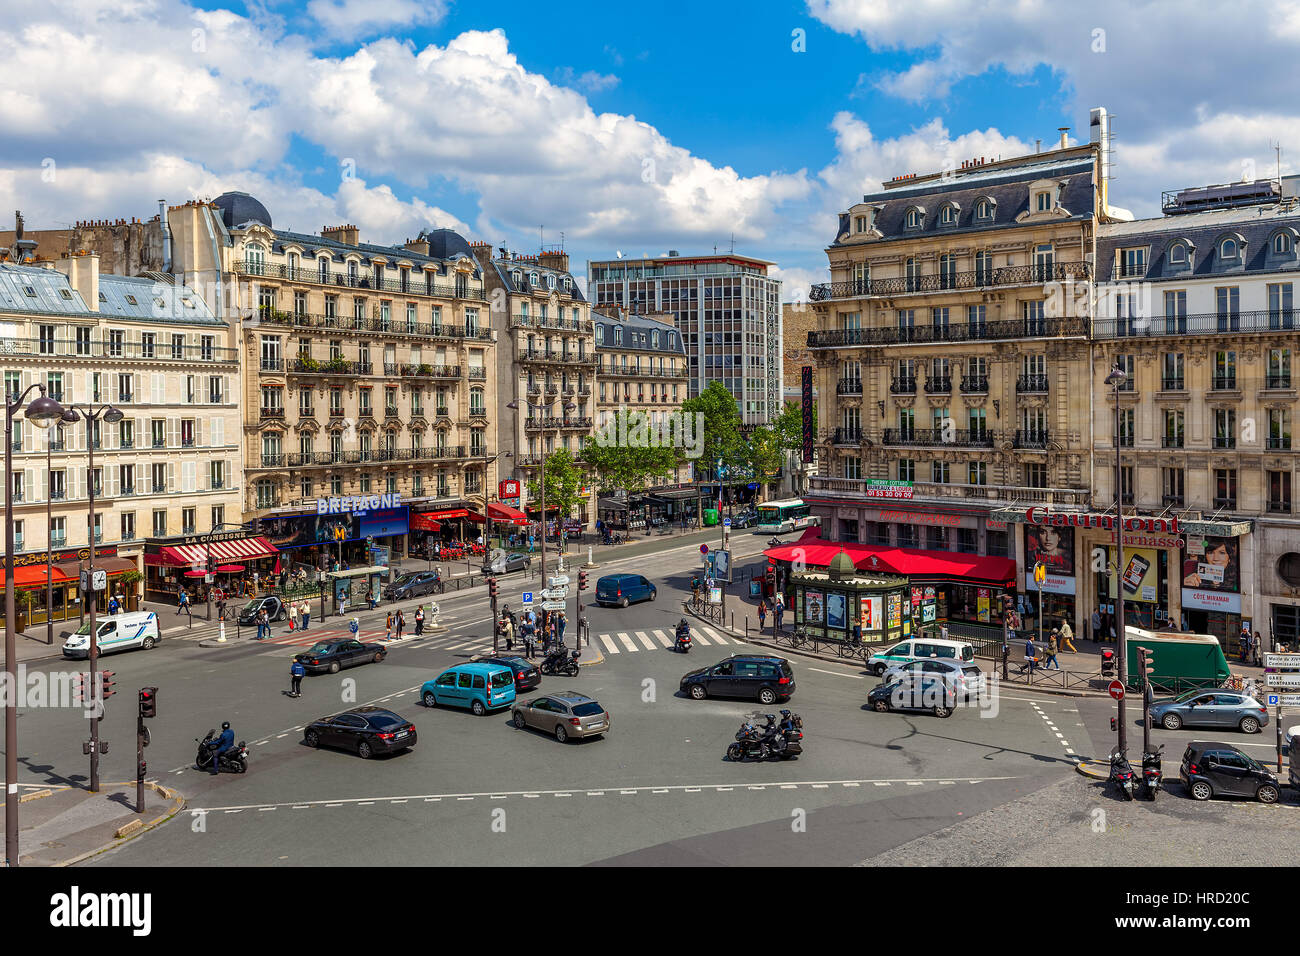 PARIS, Frankreich - 25. Mai 2016: Der typische Paris Gebäude und Boulevard du Montparnasse in Paris - Hauptstadt und bevölkerungsreichste Stadt von Frankreich, auf Anzeigen Stockfoto